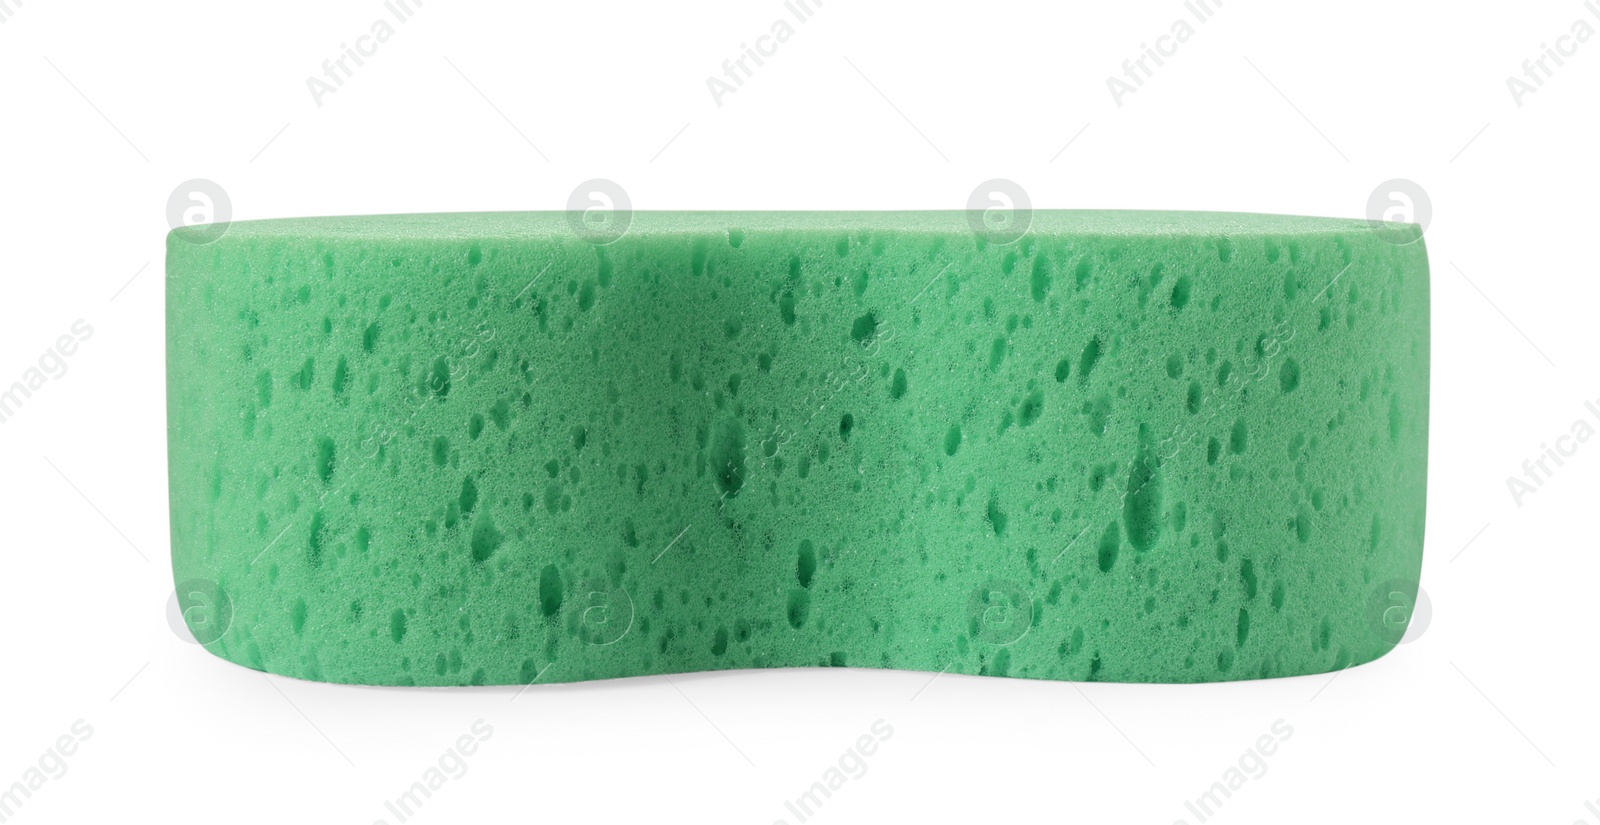 Photo of Turquoise car wash sponge isolated on white